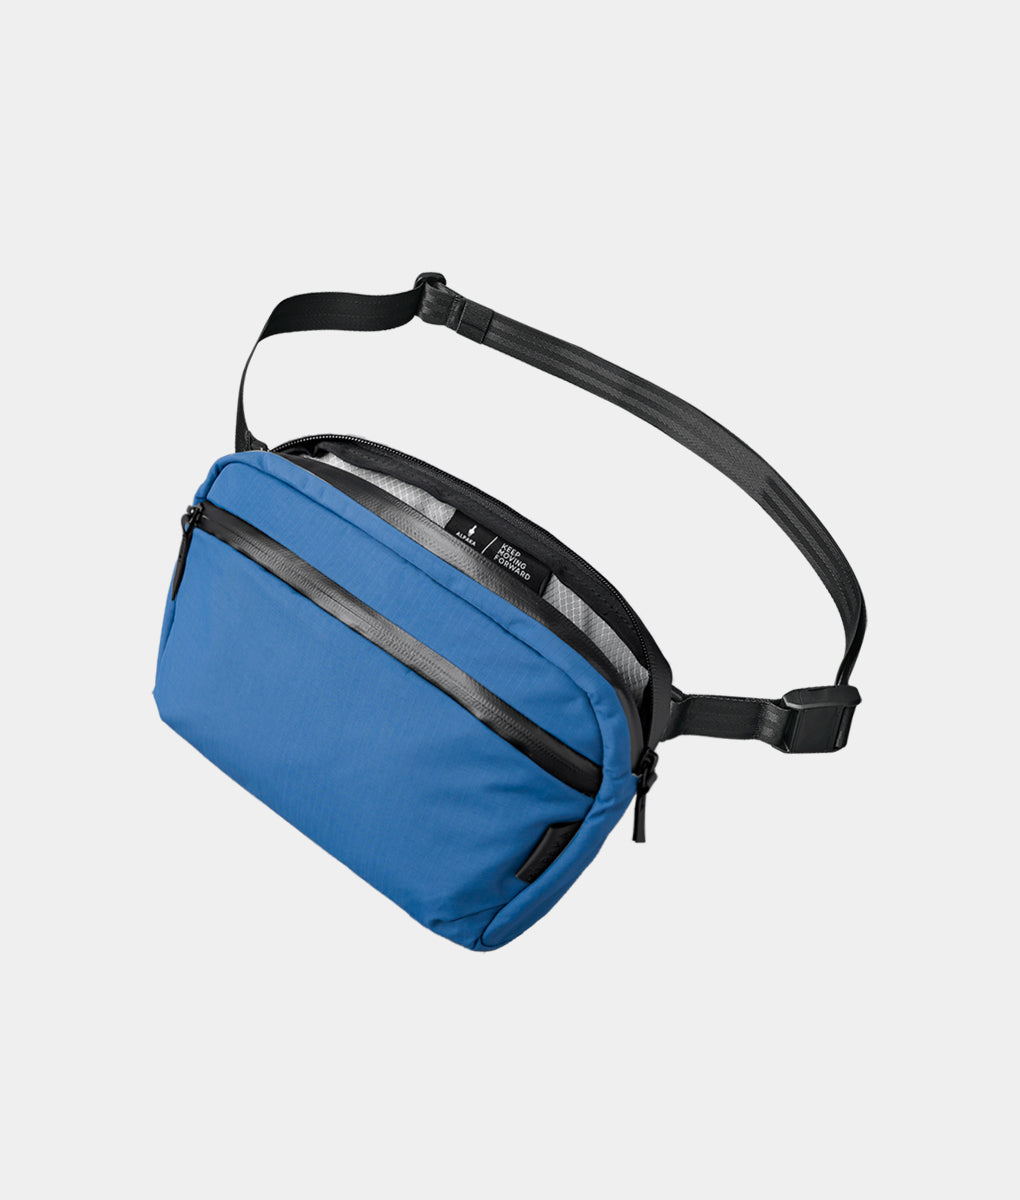 sling bag for women,sling bags under 500,best sling bag for women,sling  bags for ladies,sling bags online,sling handbags